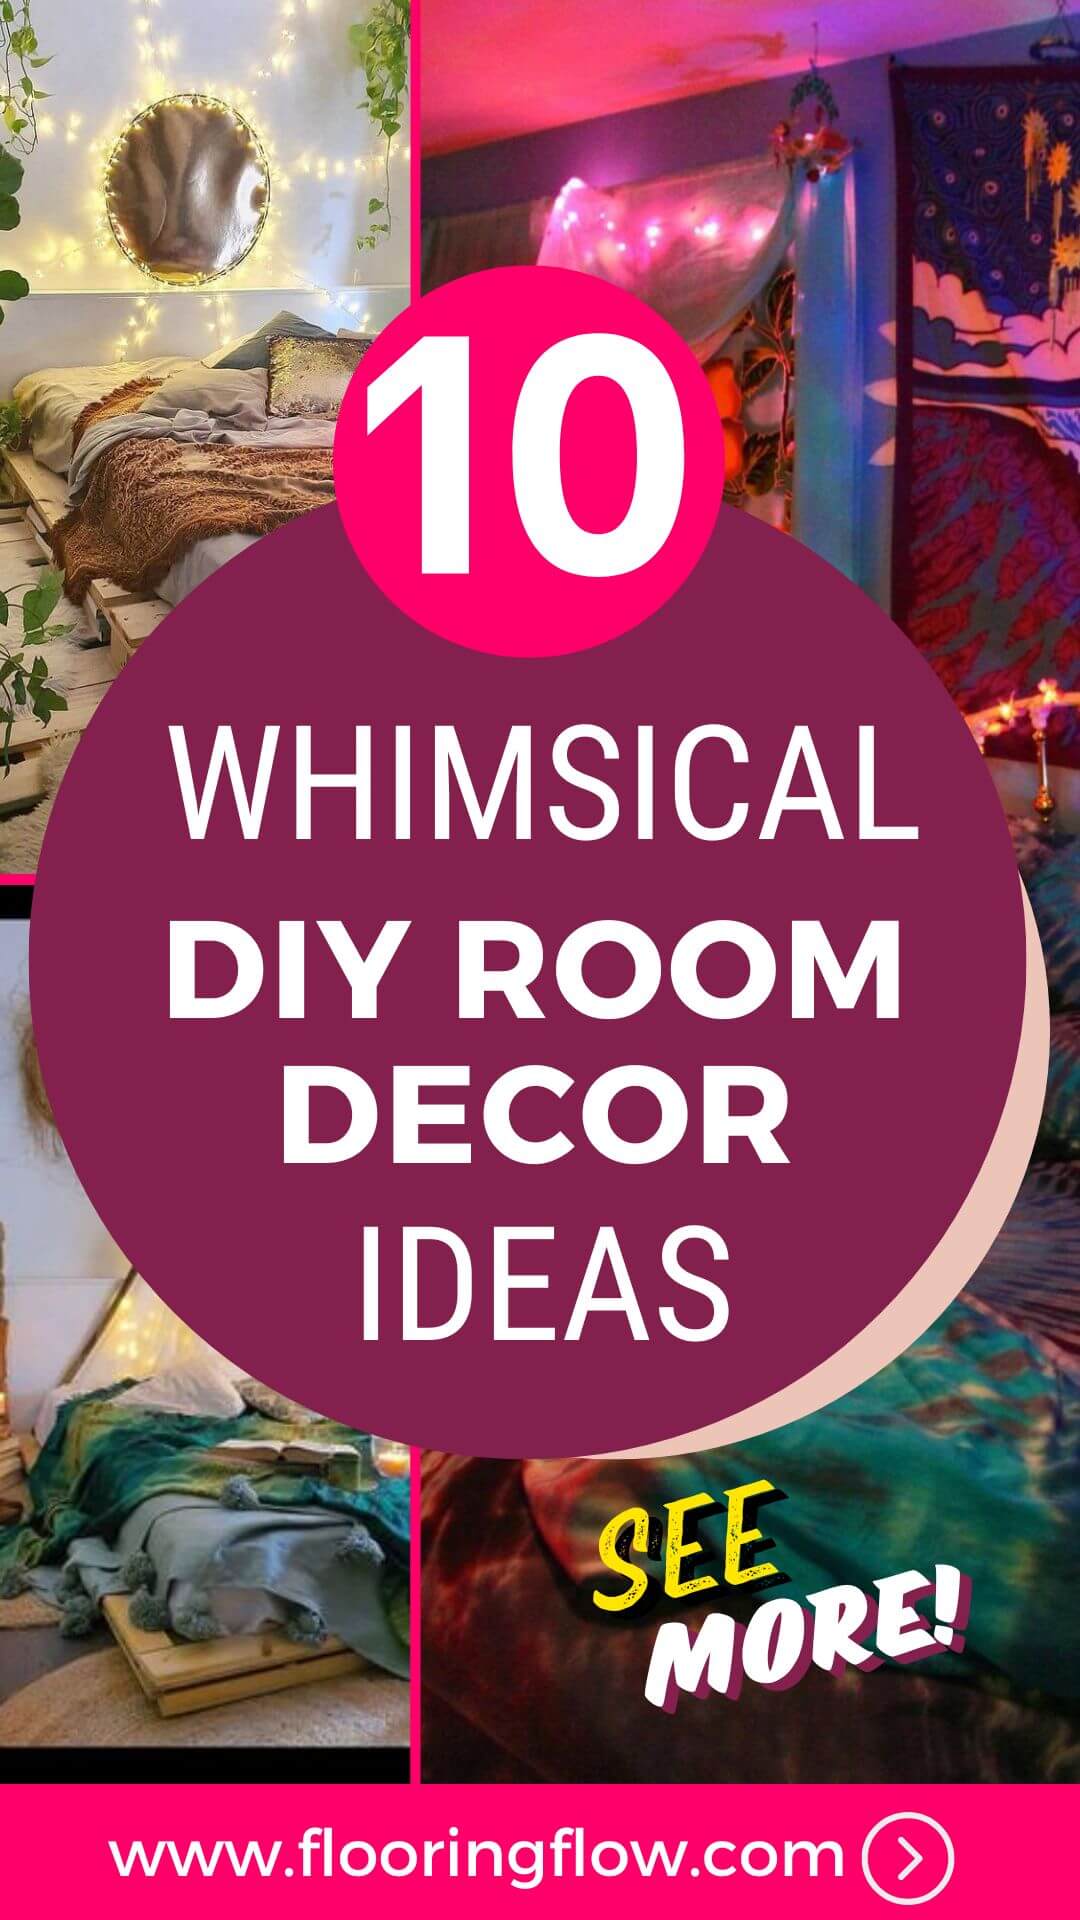 Whimsical-DIY-Room-Decor-Ideas